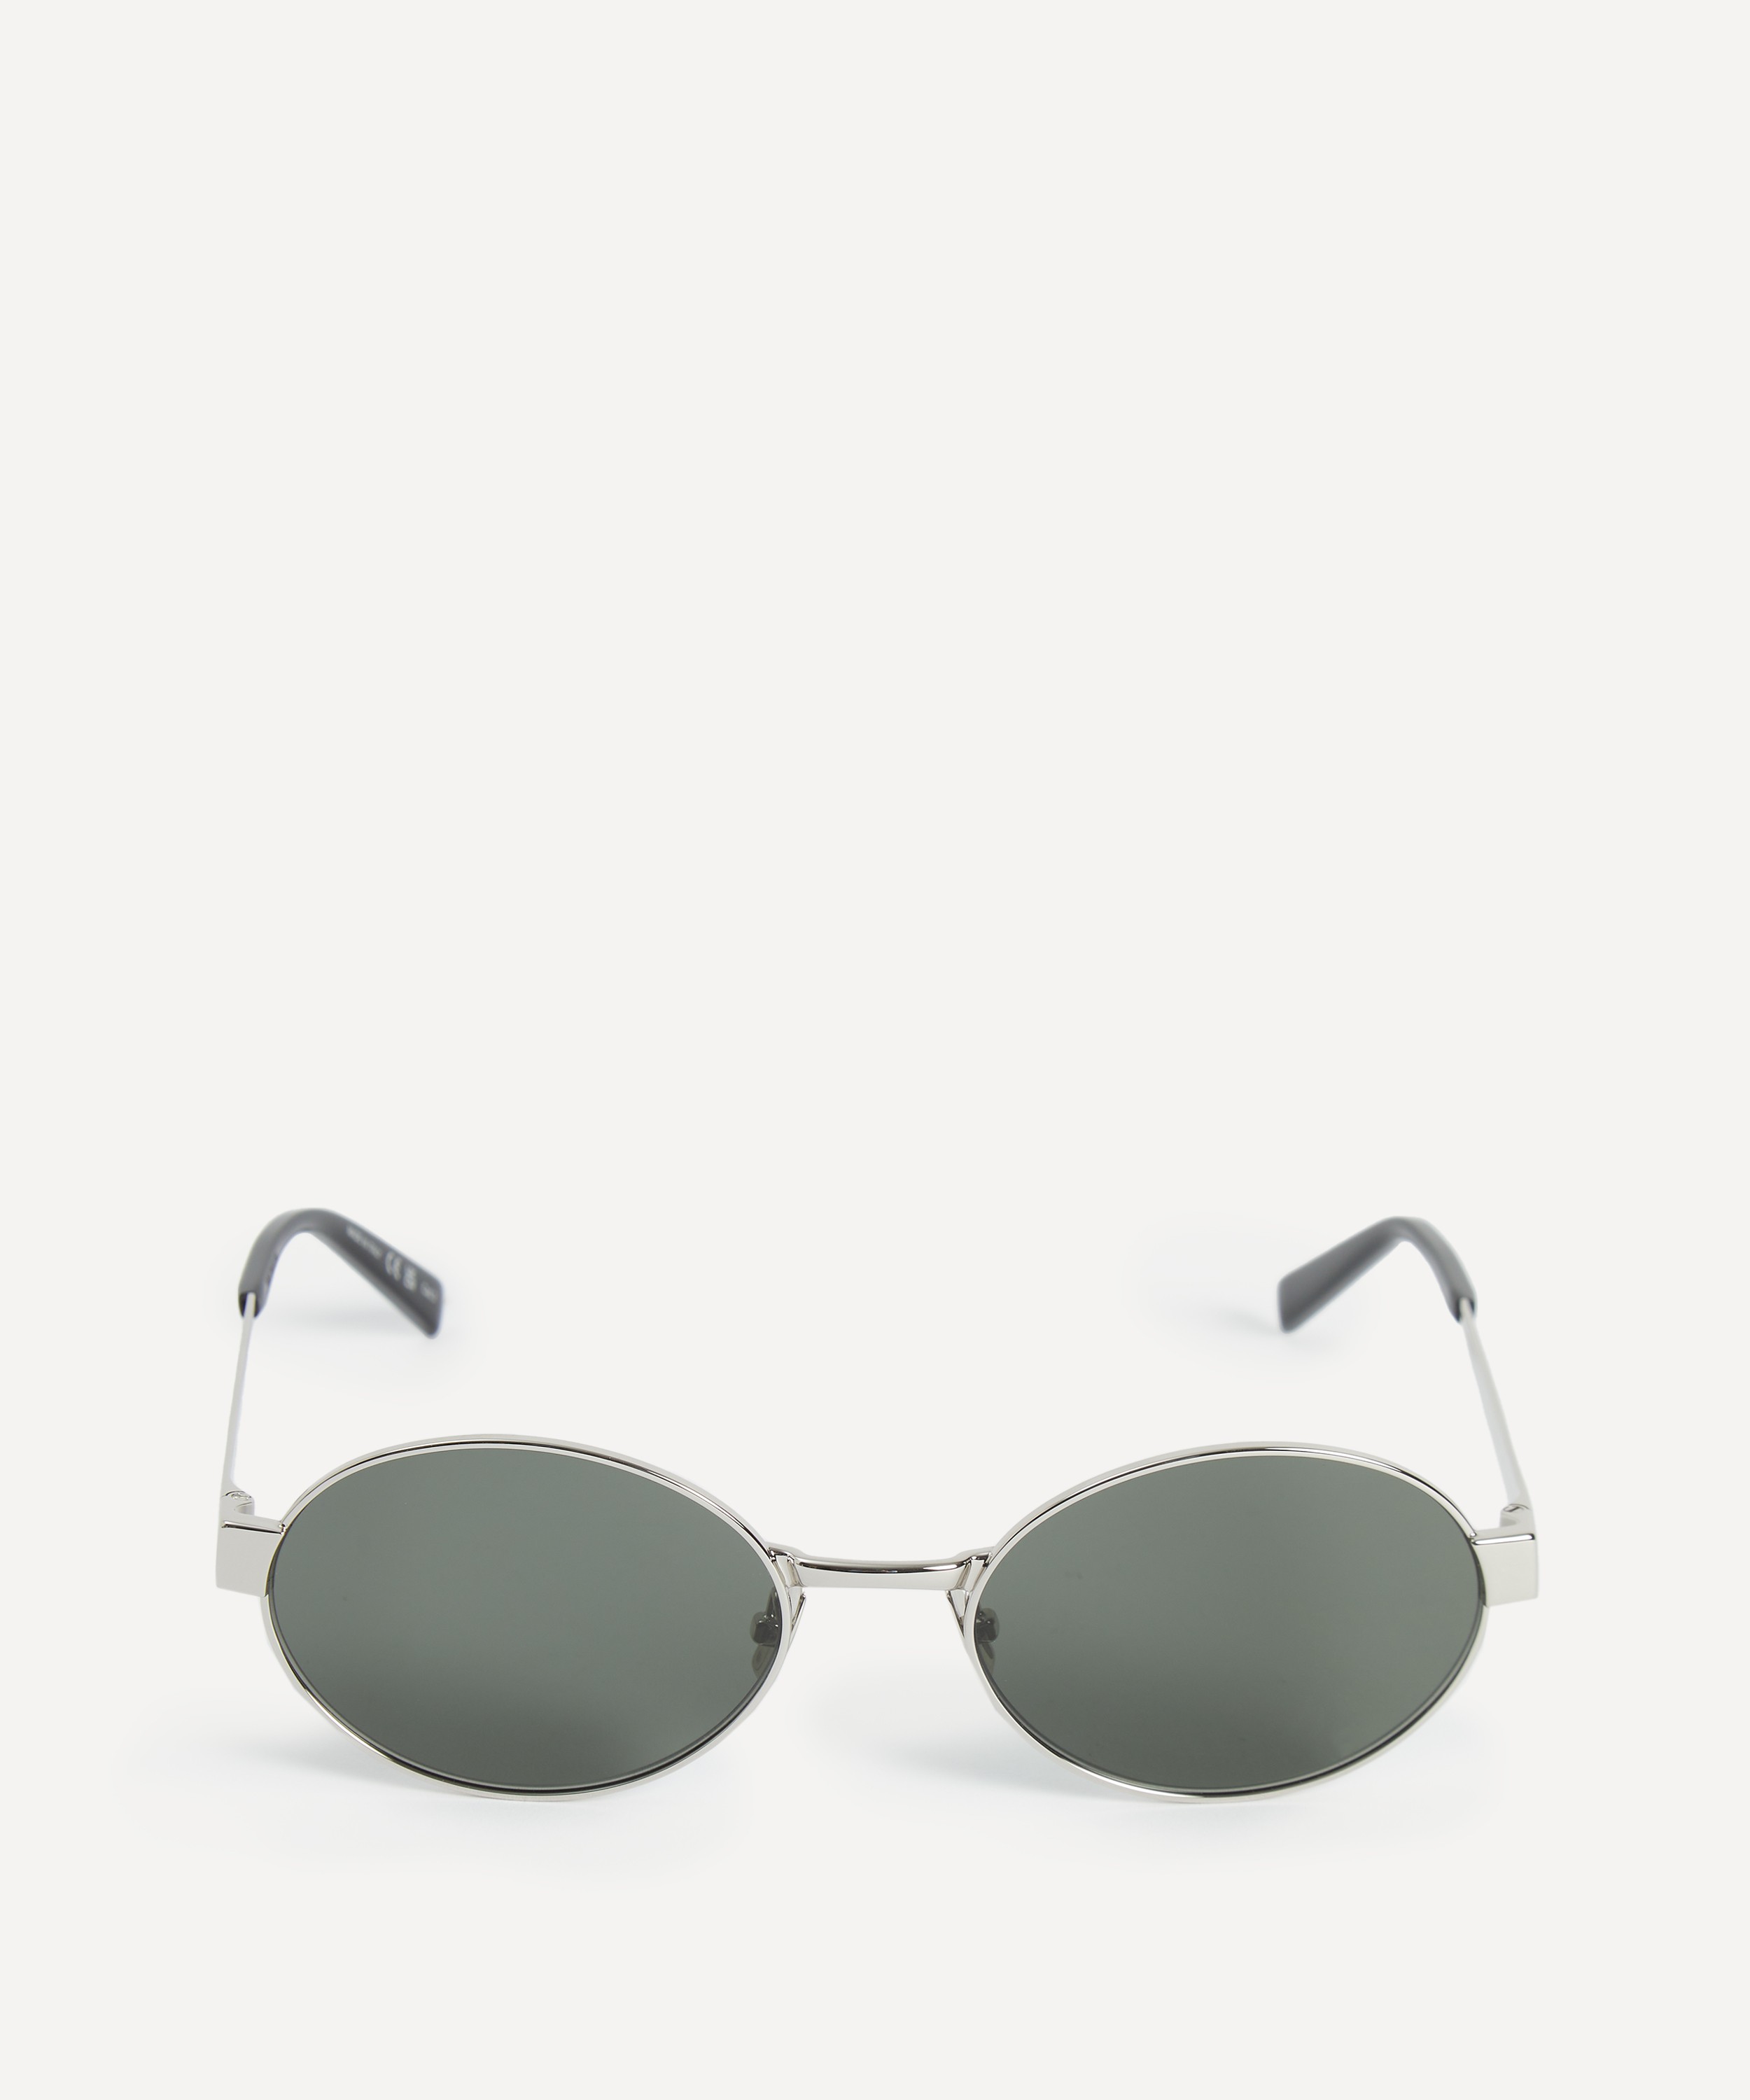 Saint Laurent - Metal Oval Sunglasses